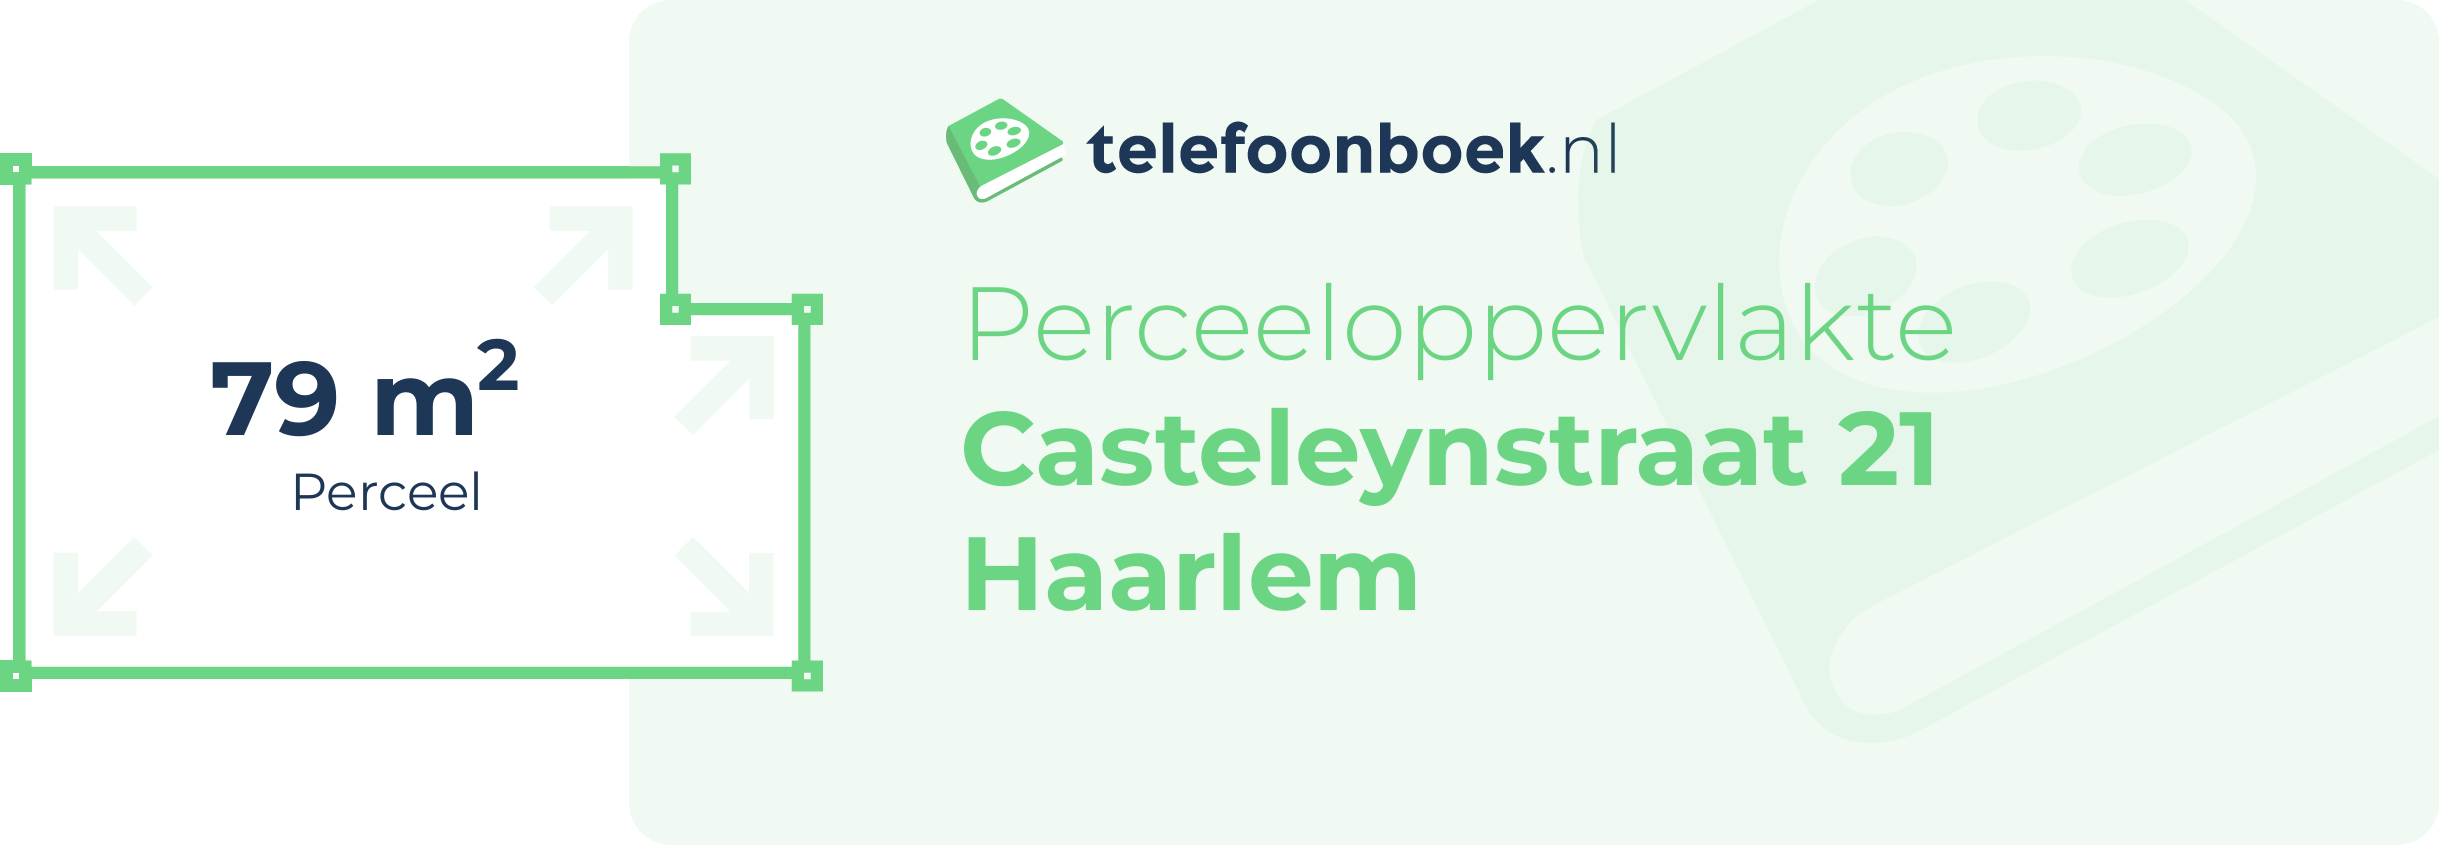 Perceeloppervlakte Casteleynstraat 21 Haarlem